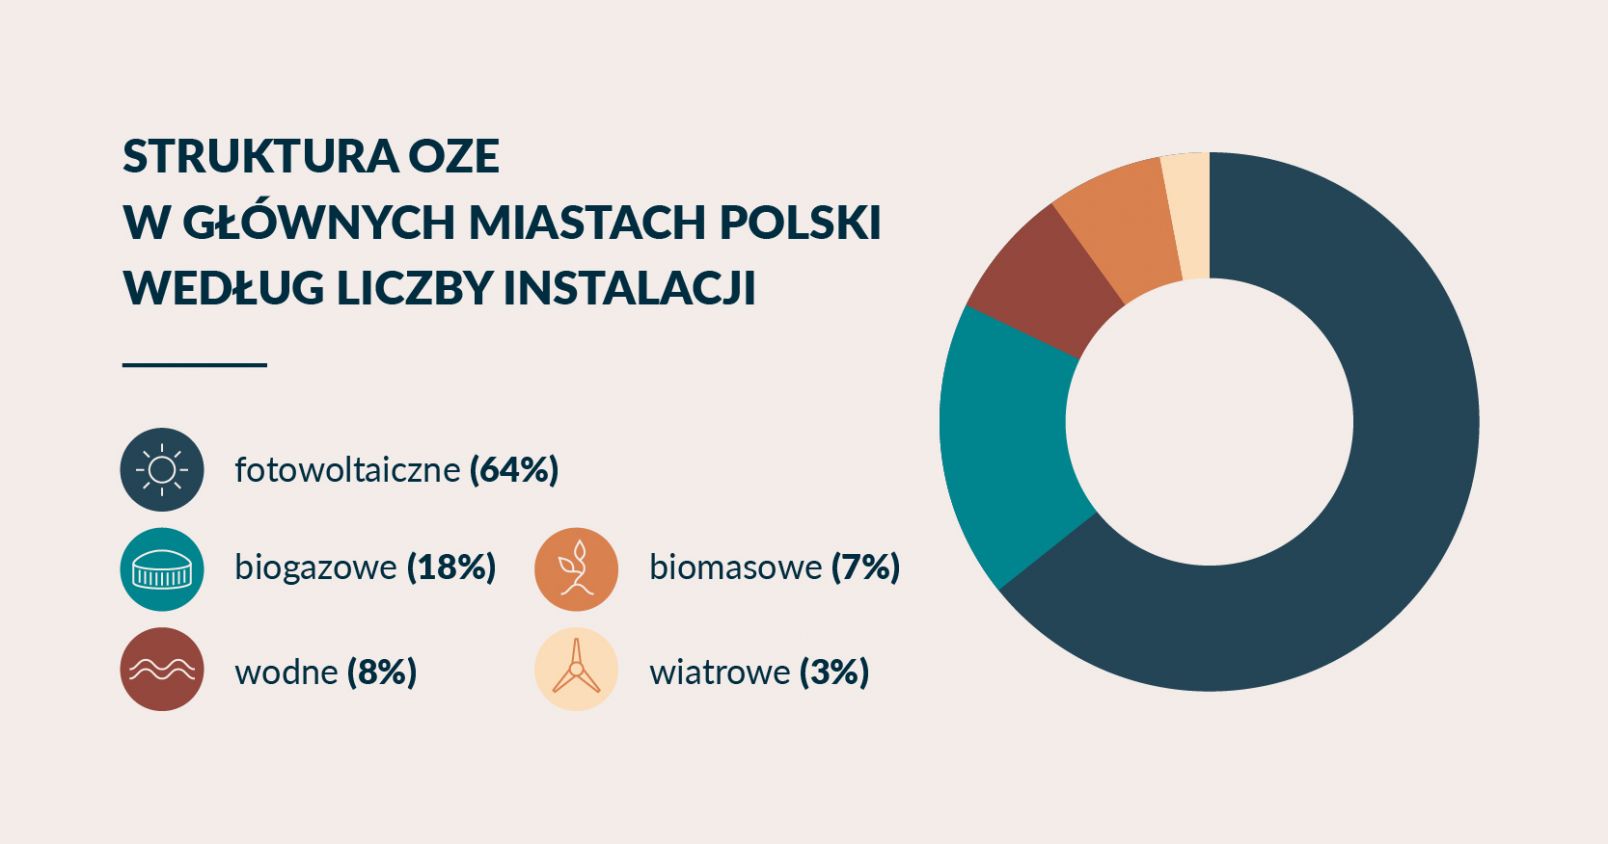 Struktura OZE w głównych miastach Polski według liczby instalacji